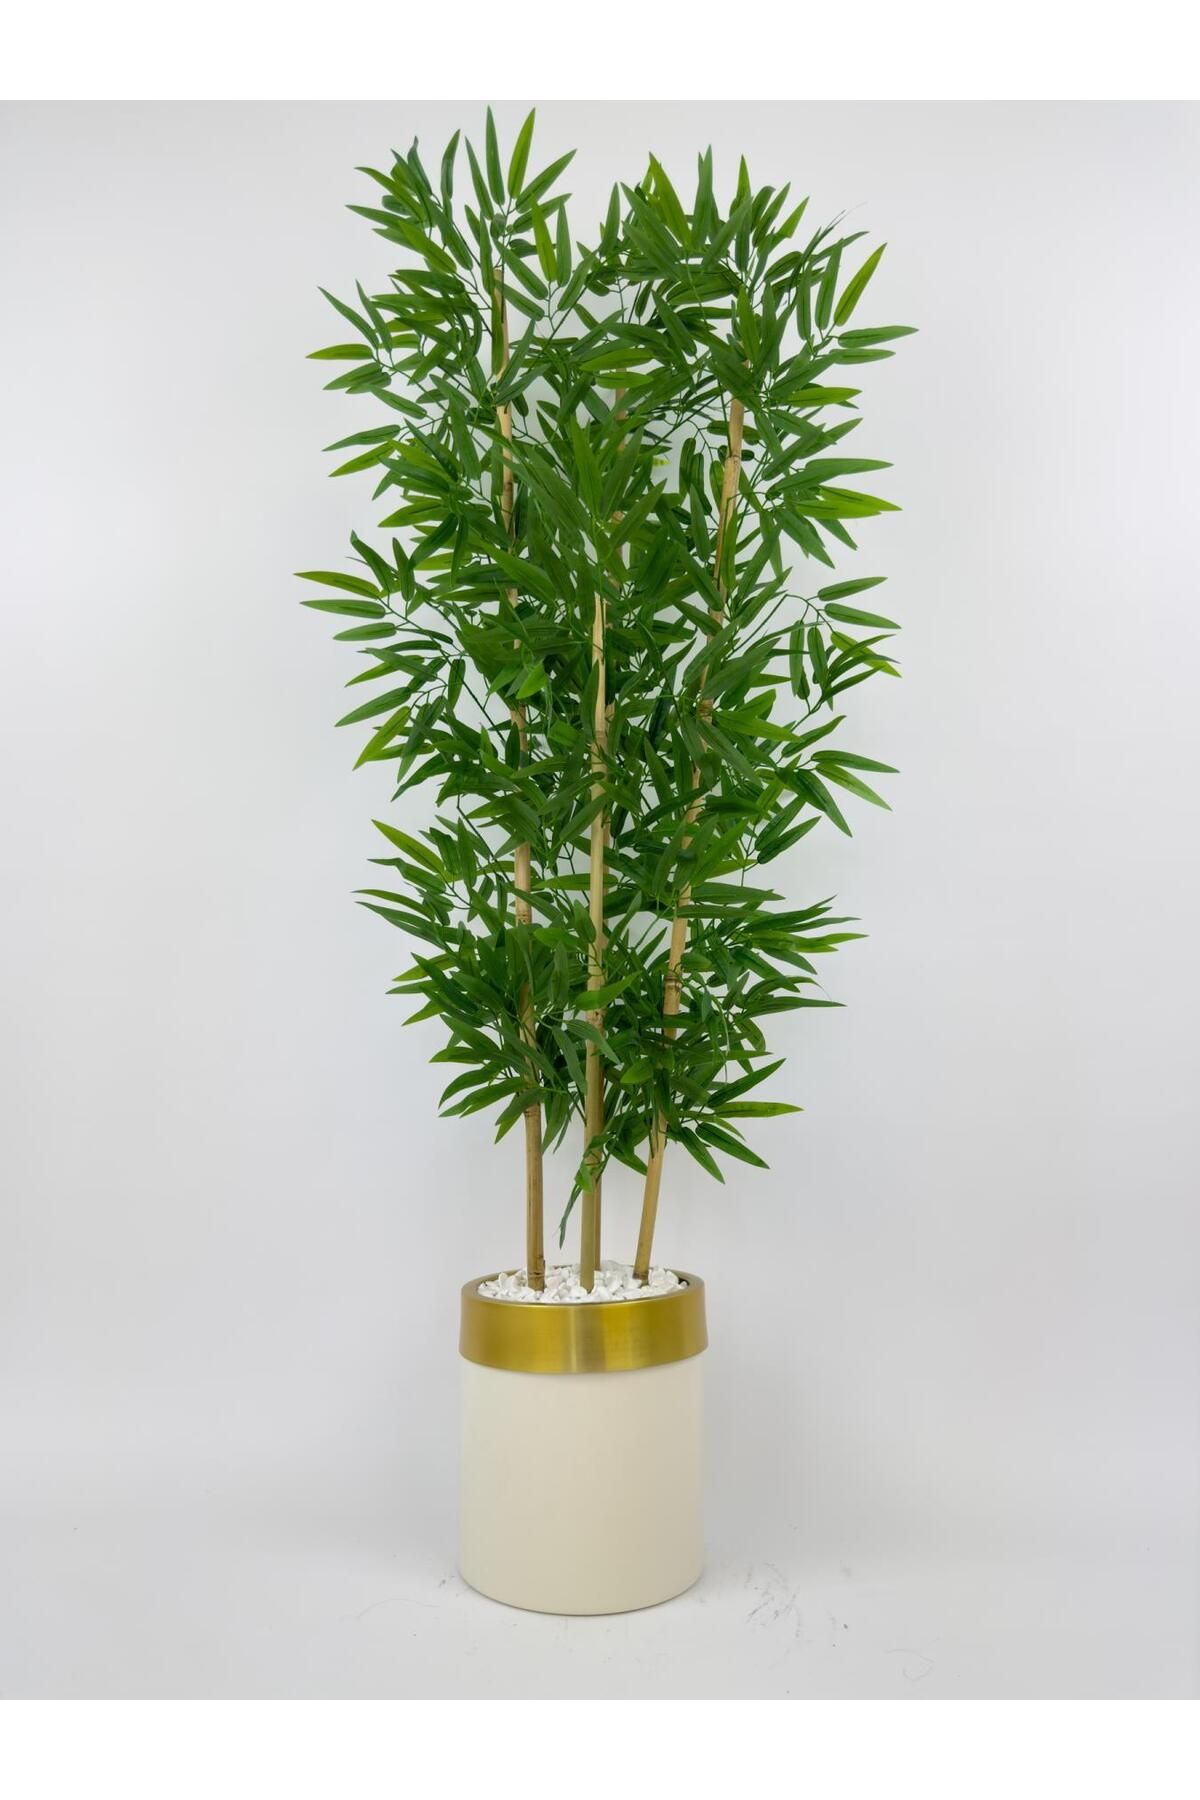 BİÇİÇEK Yapay bambu ağacı 140cm krem gold metal saksıda